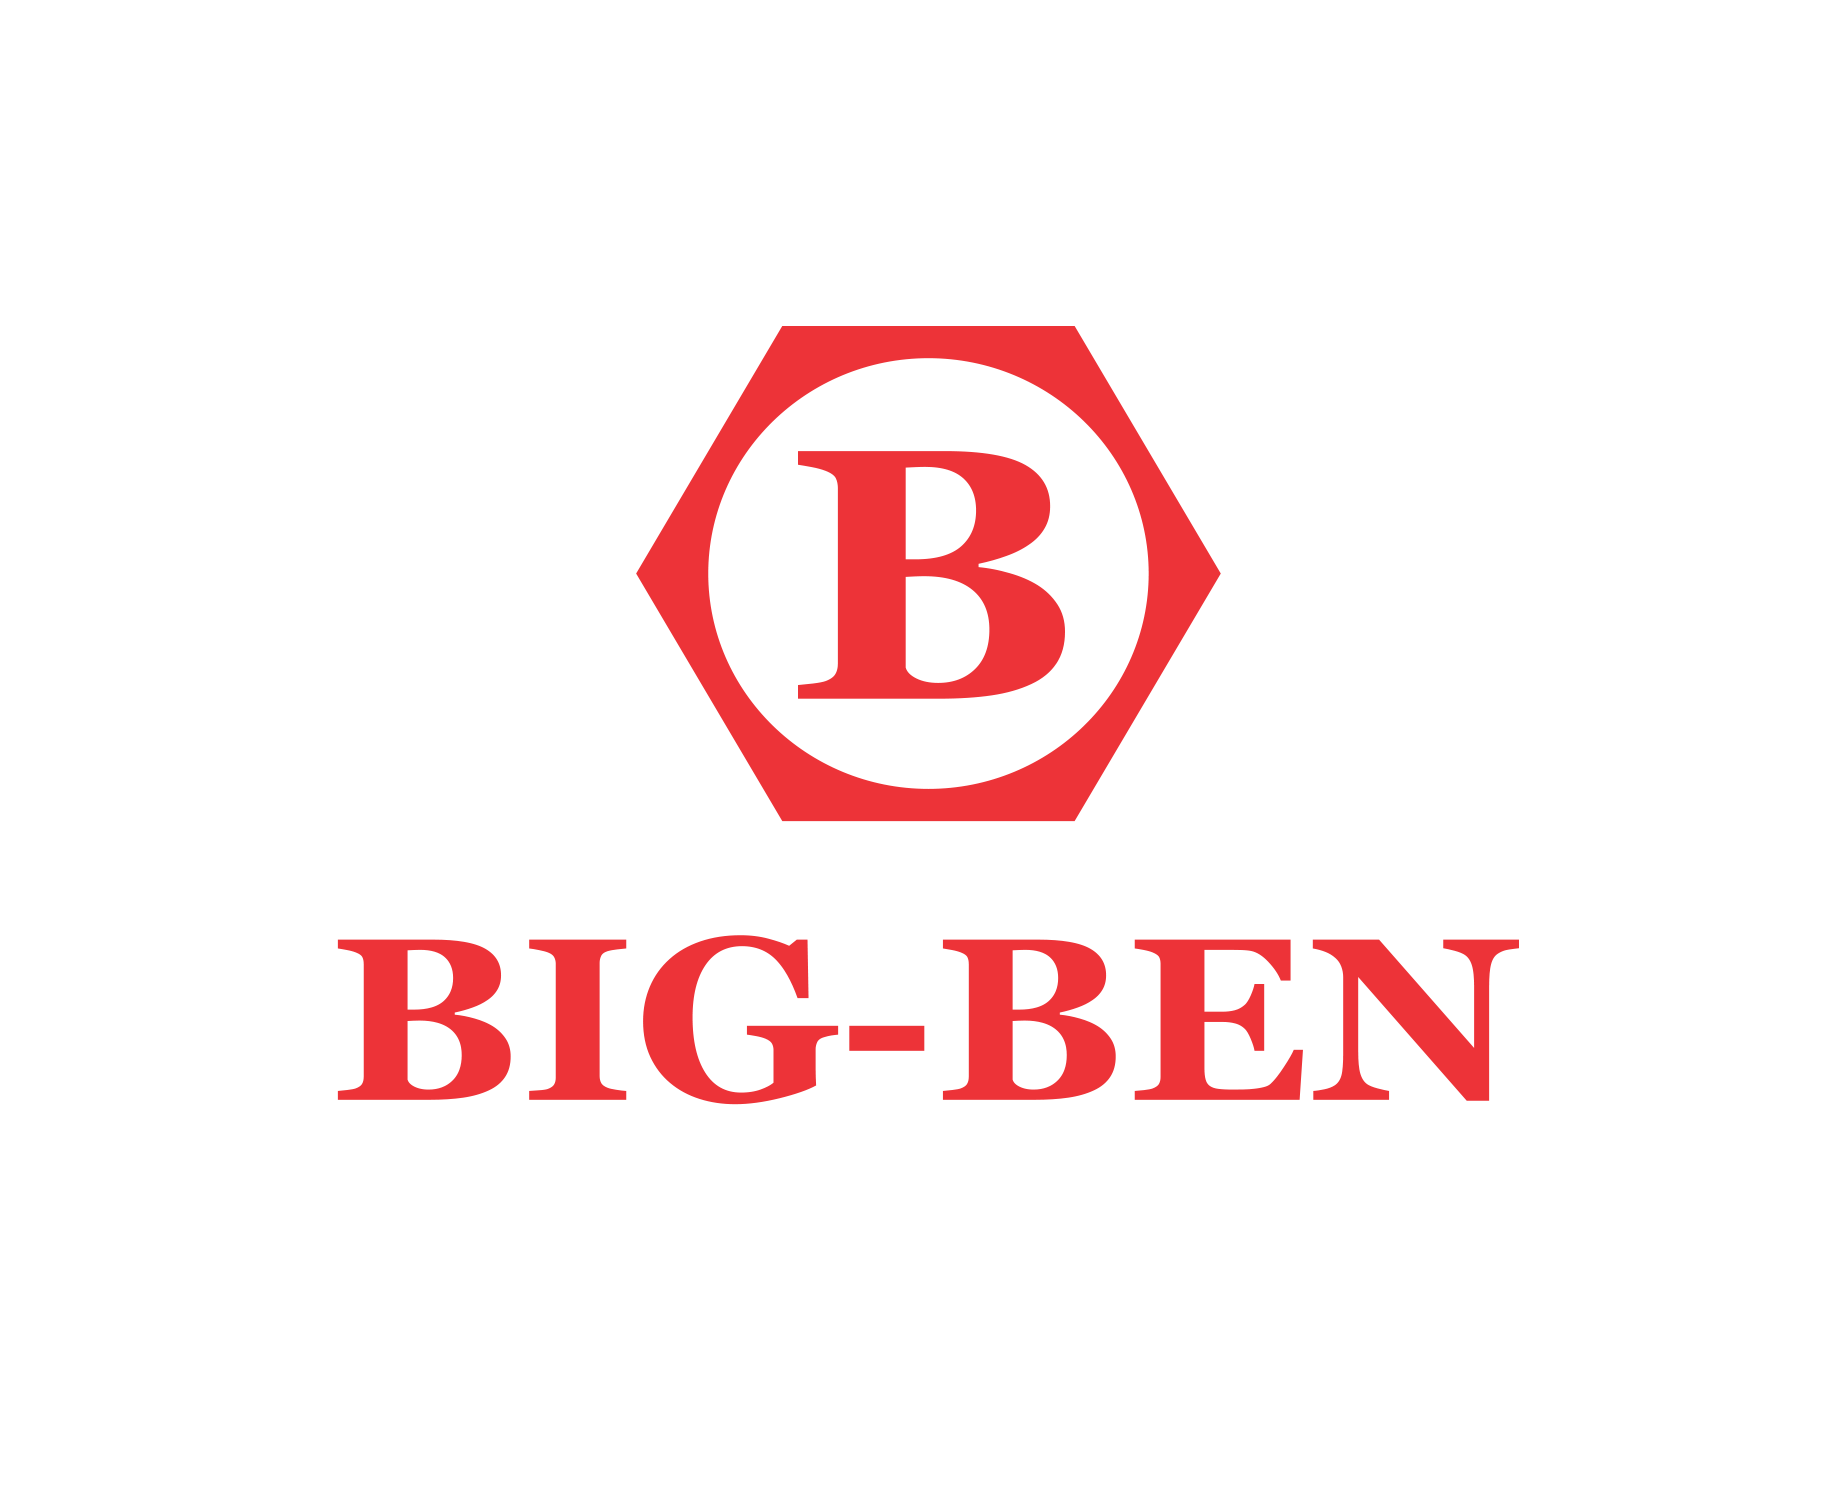 BIG-BEN LOGO